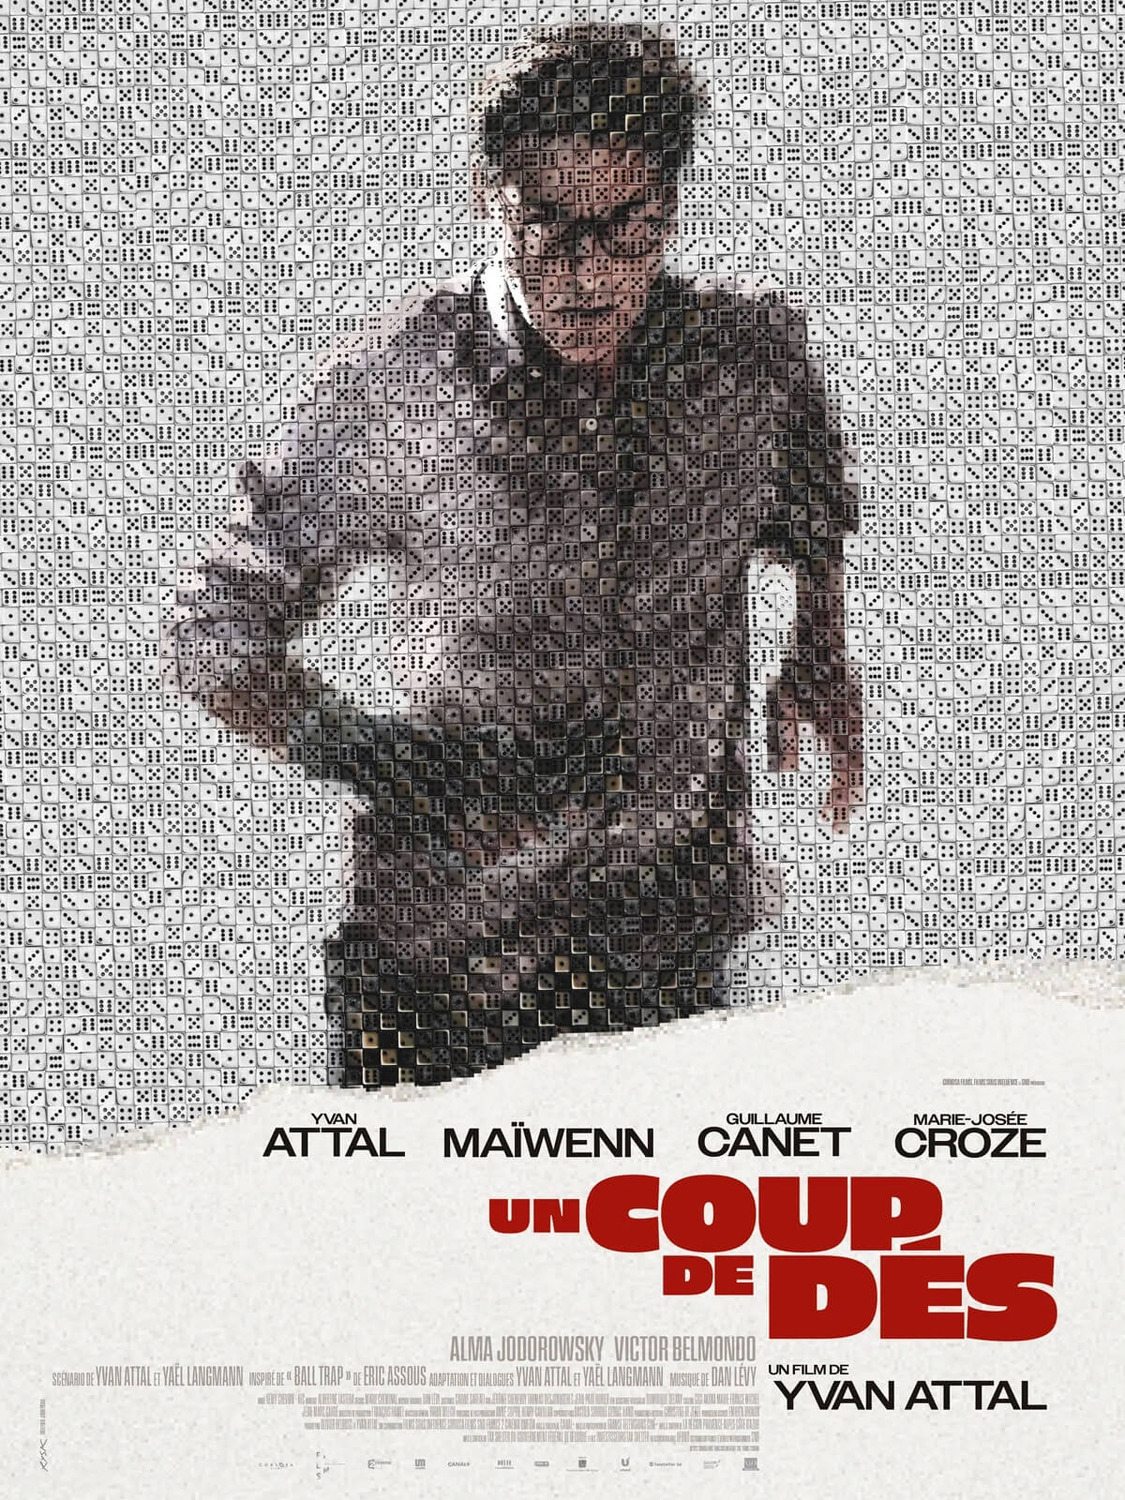 Extra Large Movie Poster Image for Un coup de dés (#2 of 4)